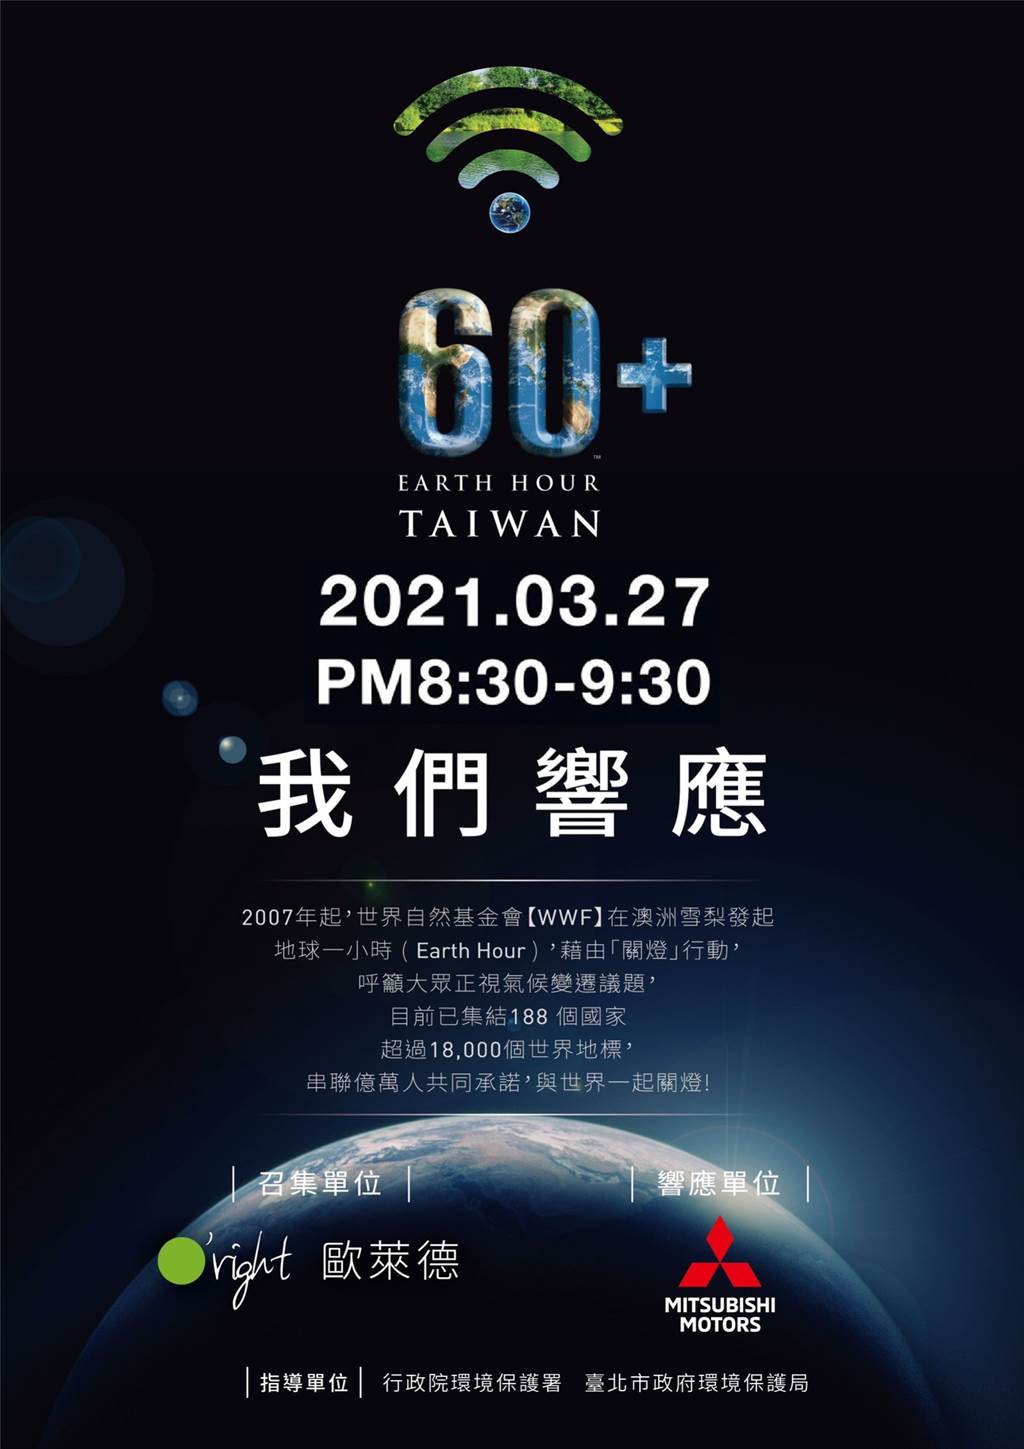 近百家企業共同響應    中華三菱連續3年參與「地球1小時」！
